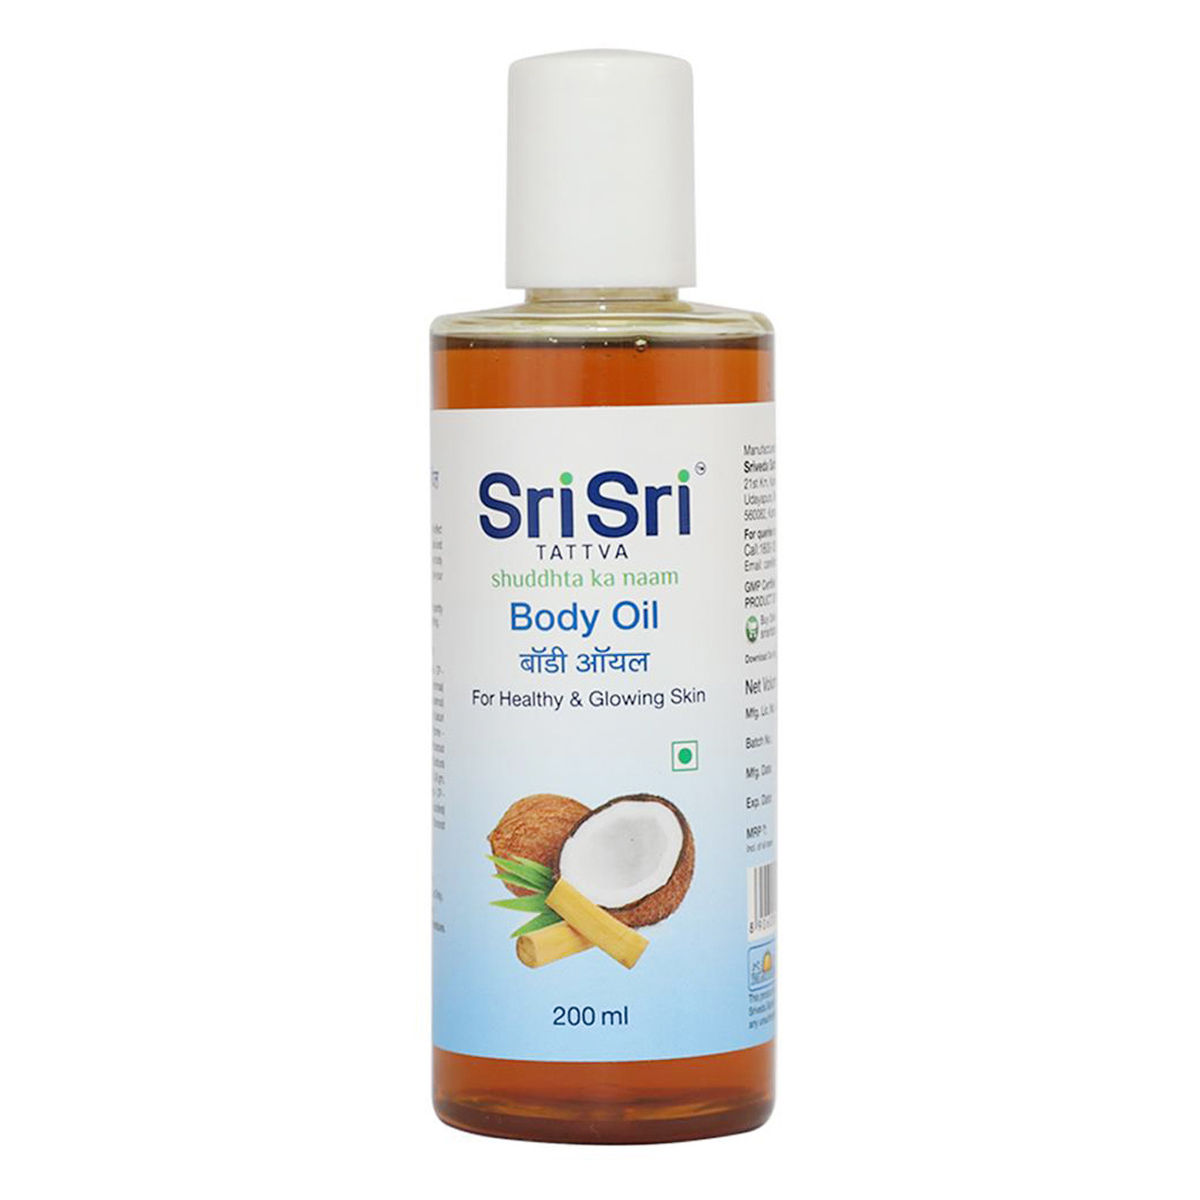 Buy Sri Sri Tattva Body Oil, 200 ml Online